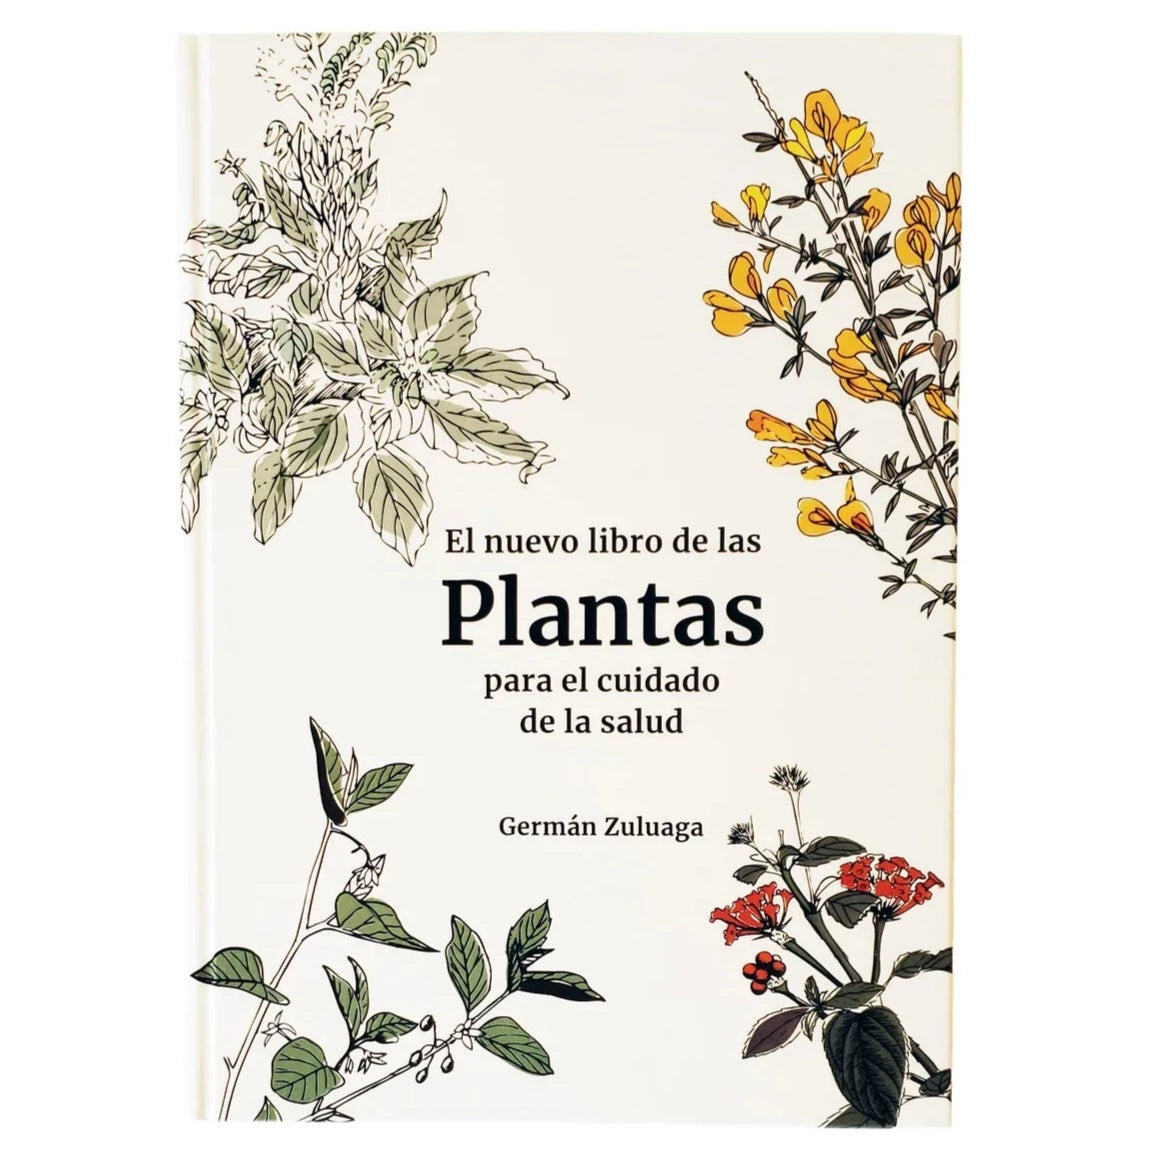 El nuevo libro de las plantas para el cuidado de la salud